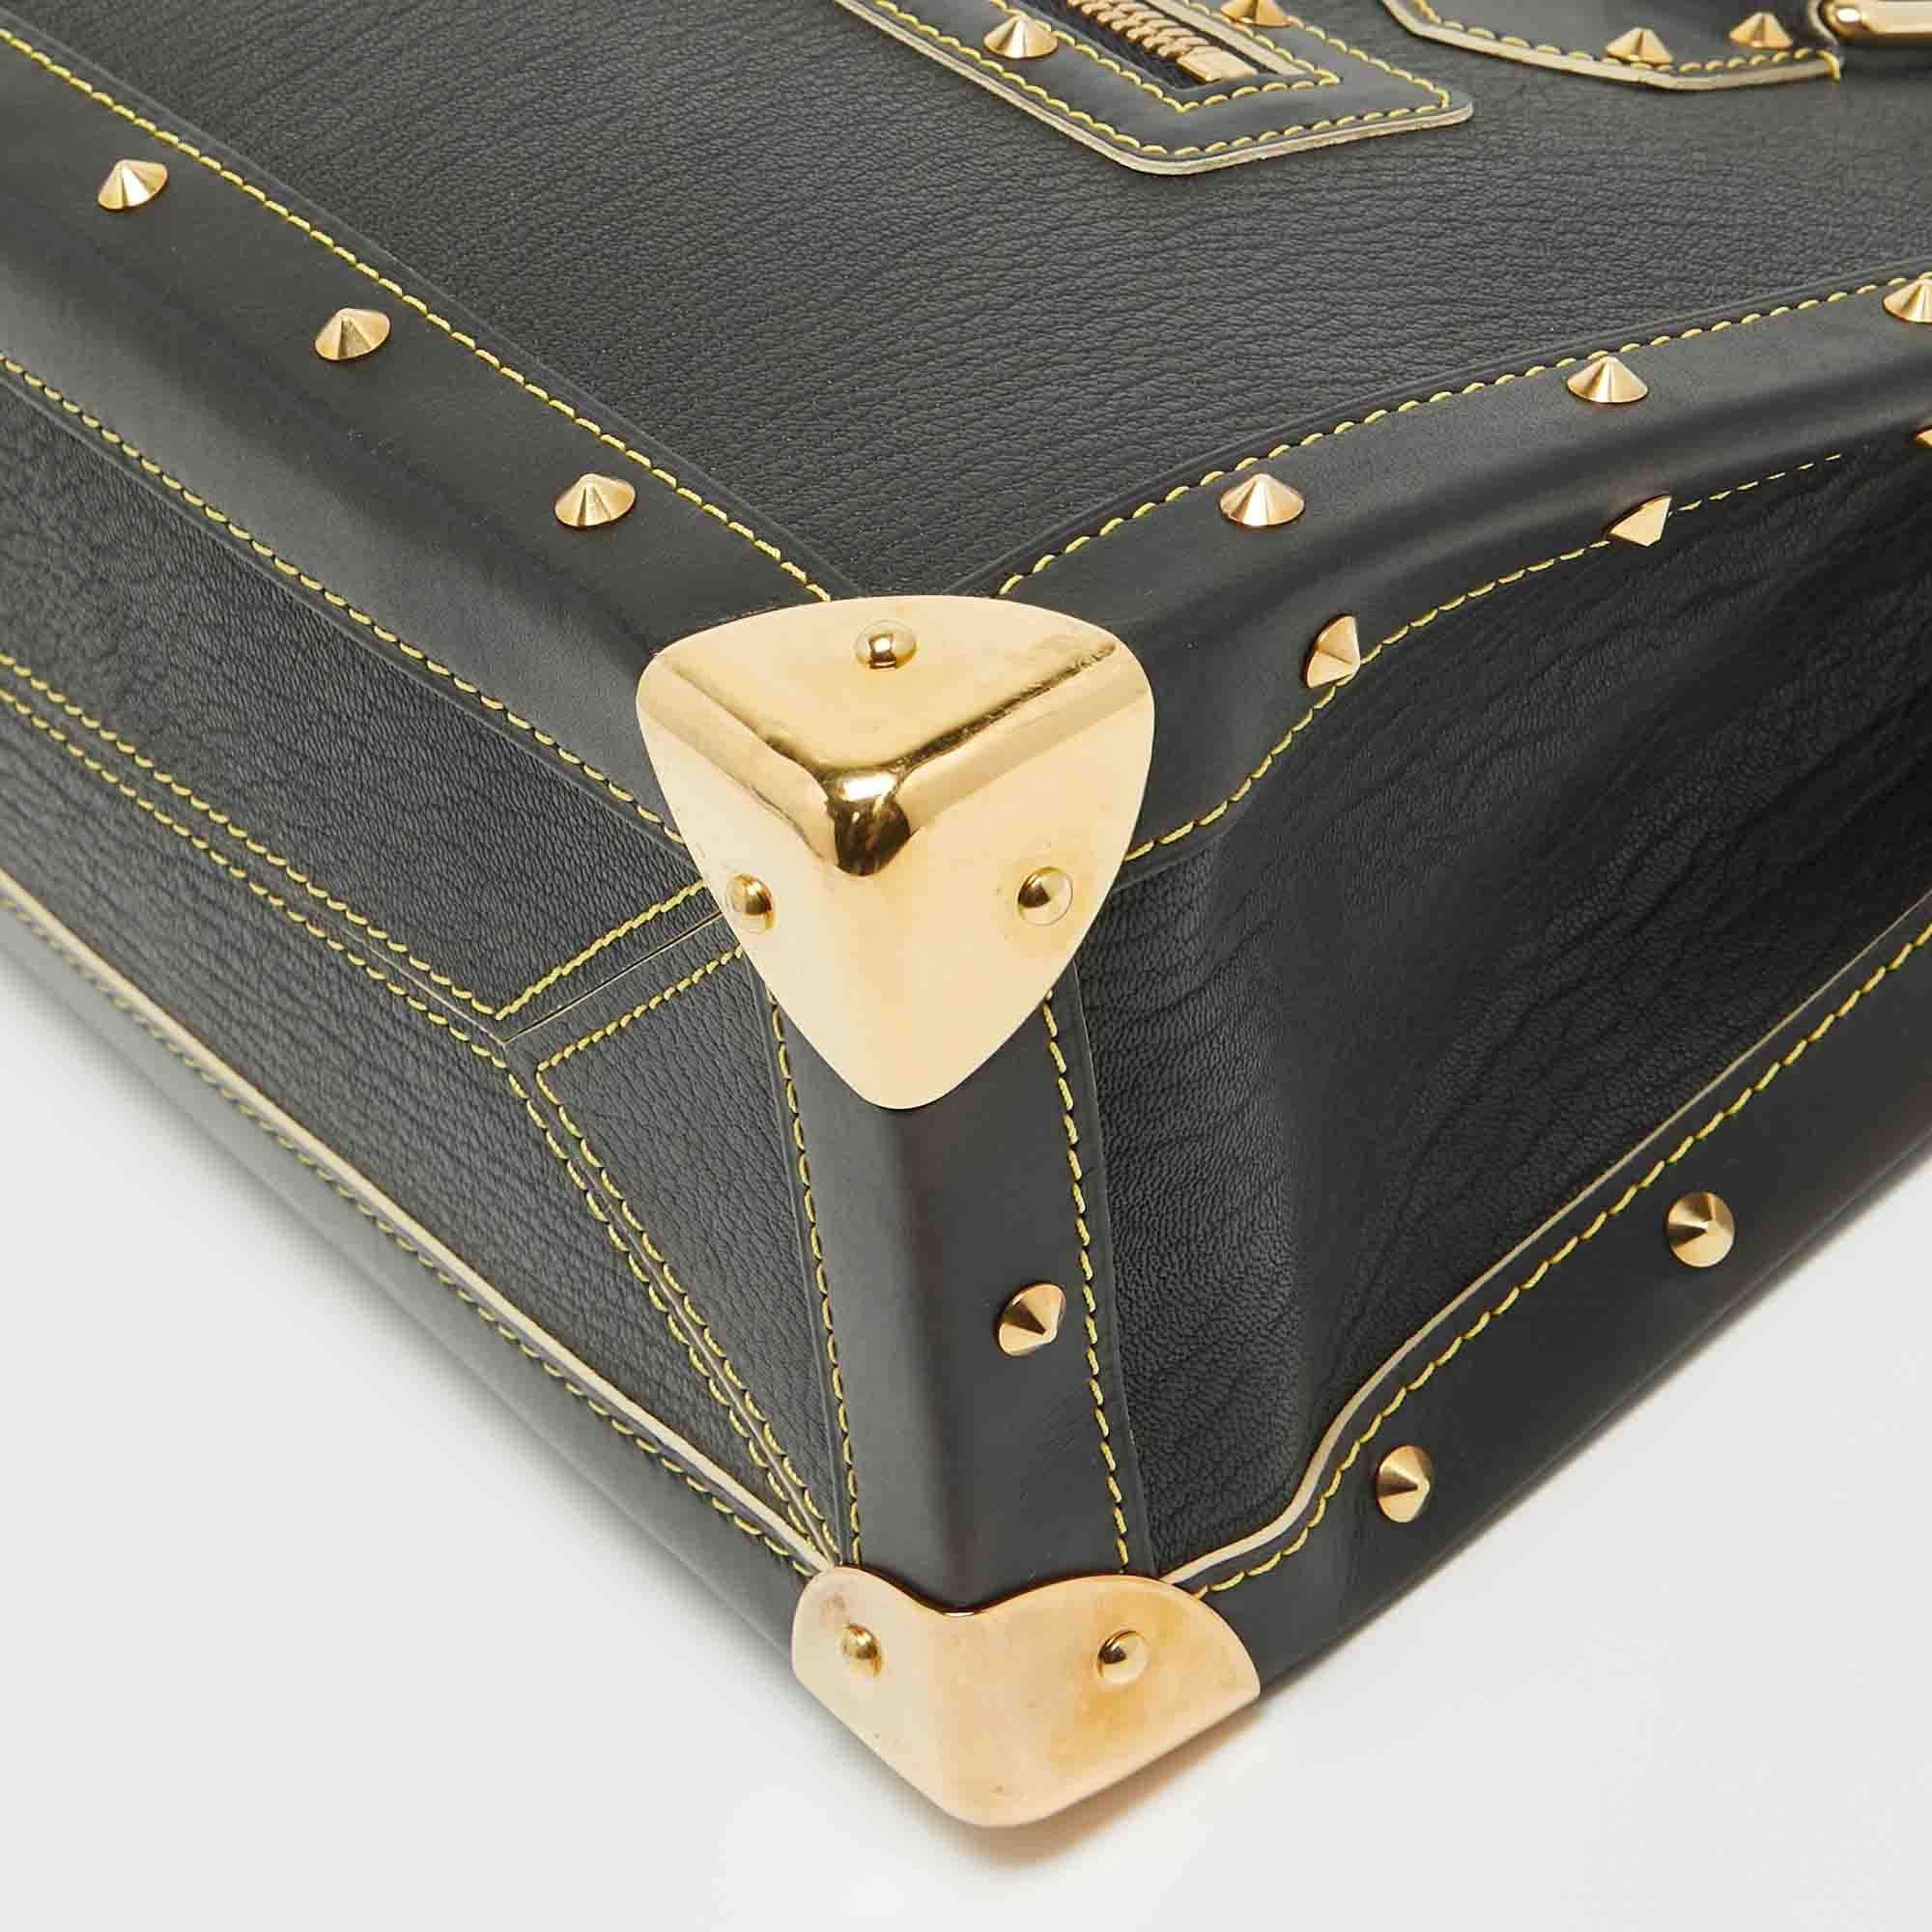 Louis Vuitton Black Suhali Leather Le Fabuleux Bag 3